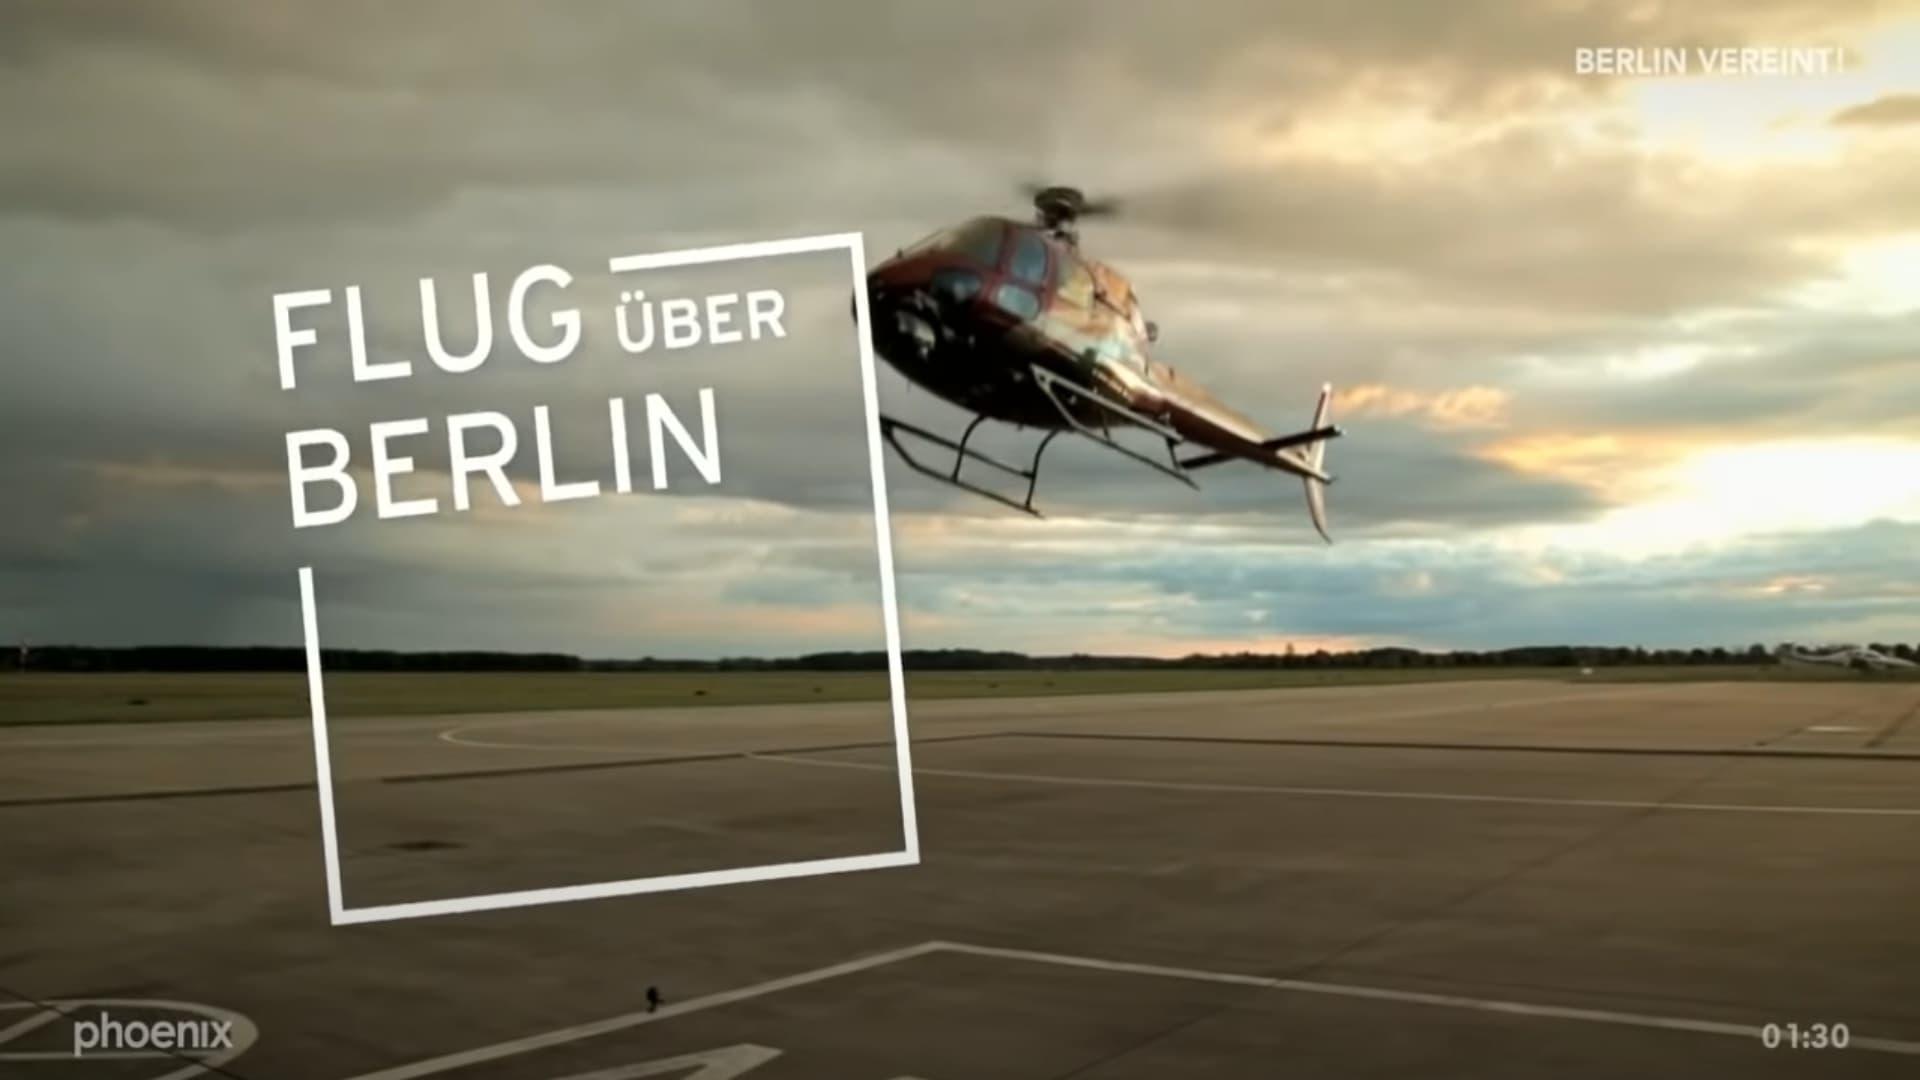 Flug über Berlin backdrop